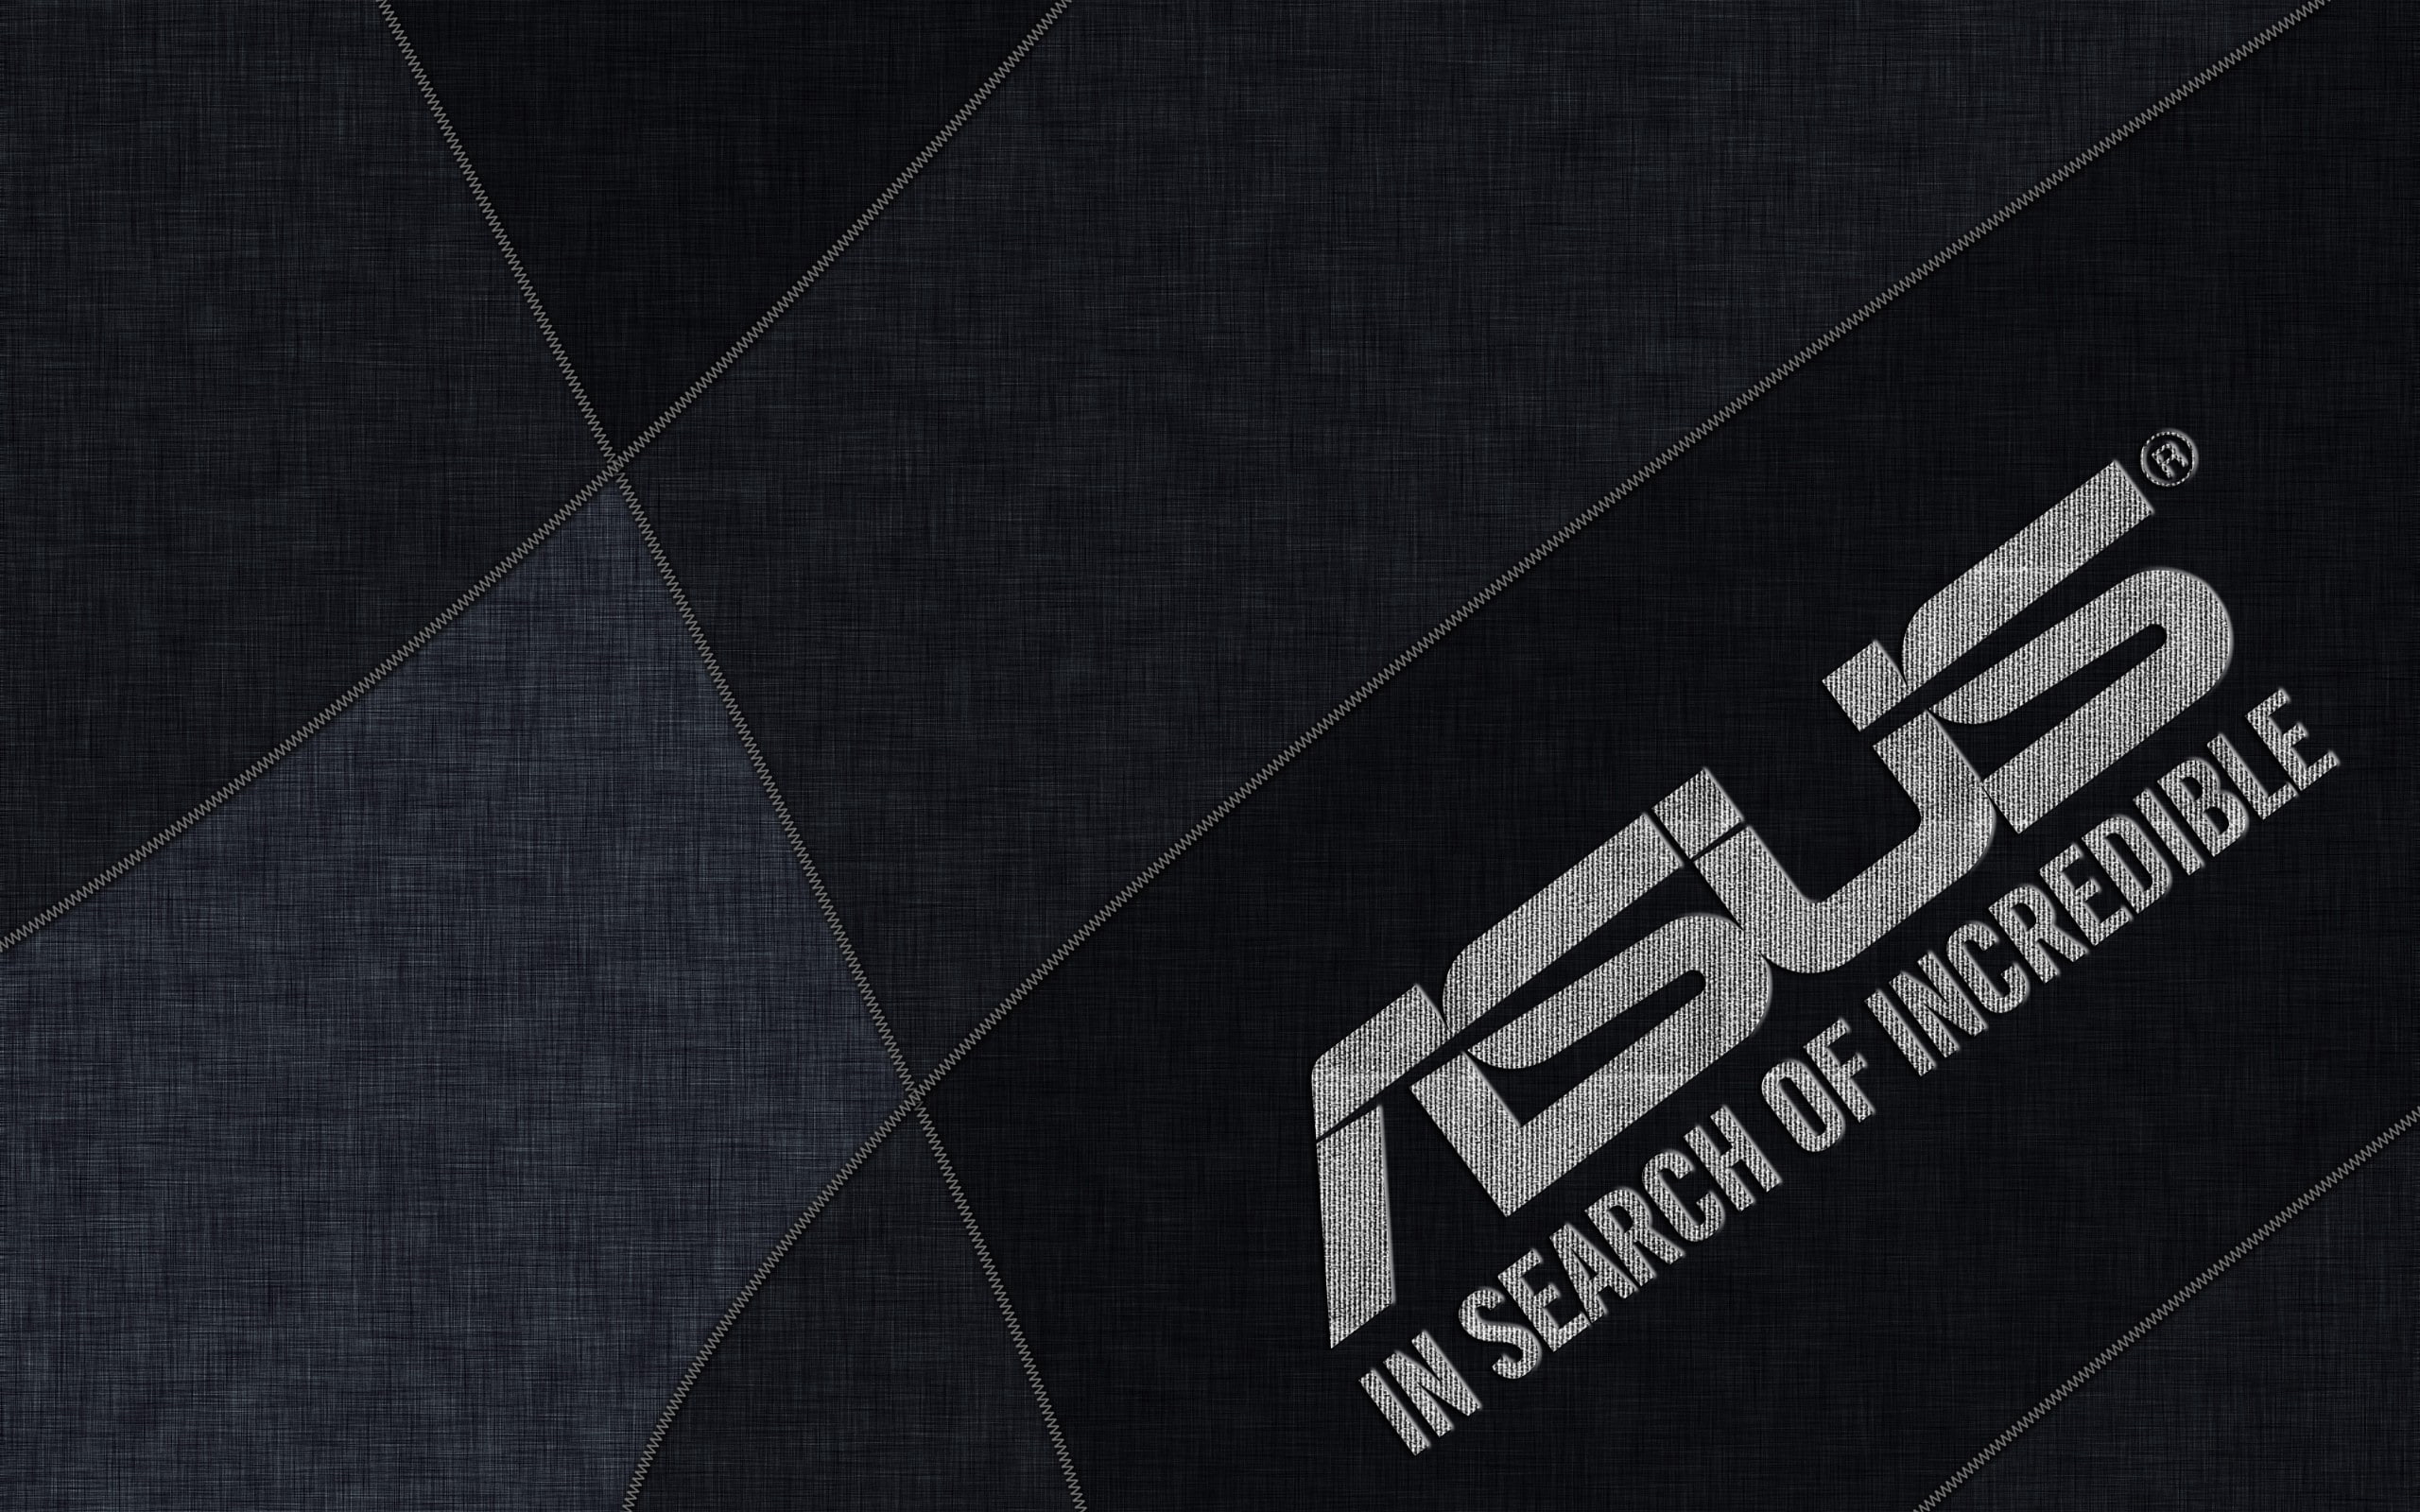 ASUS, logo, digital art